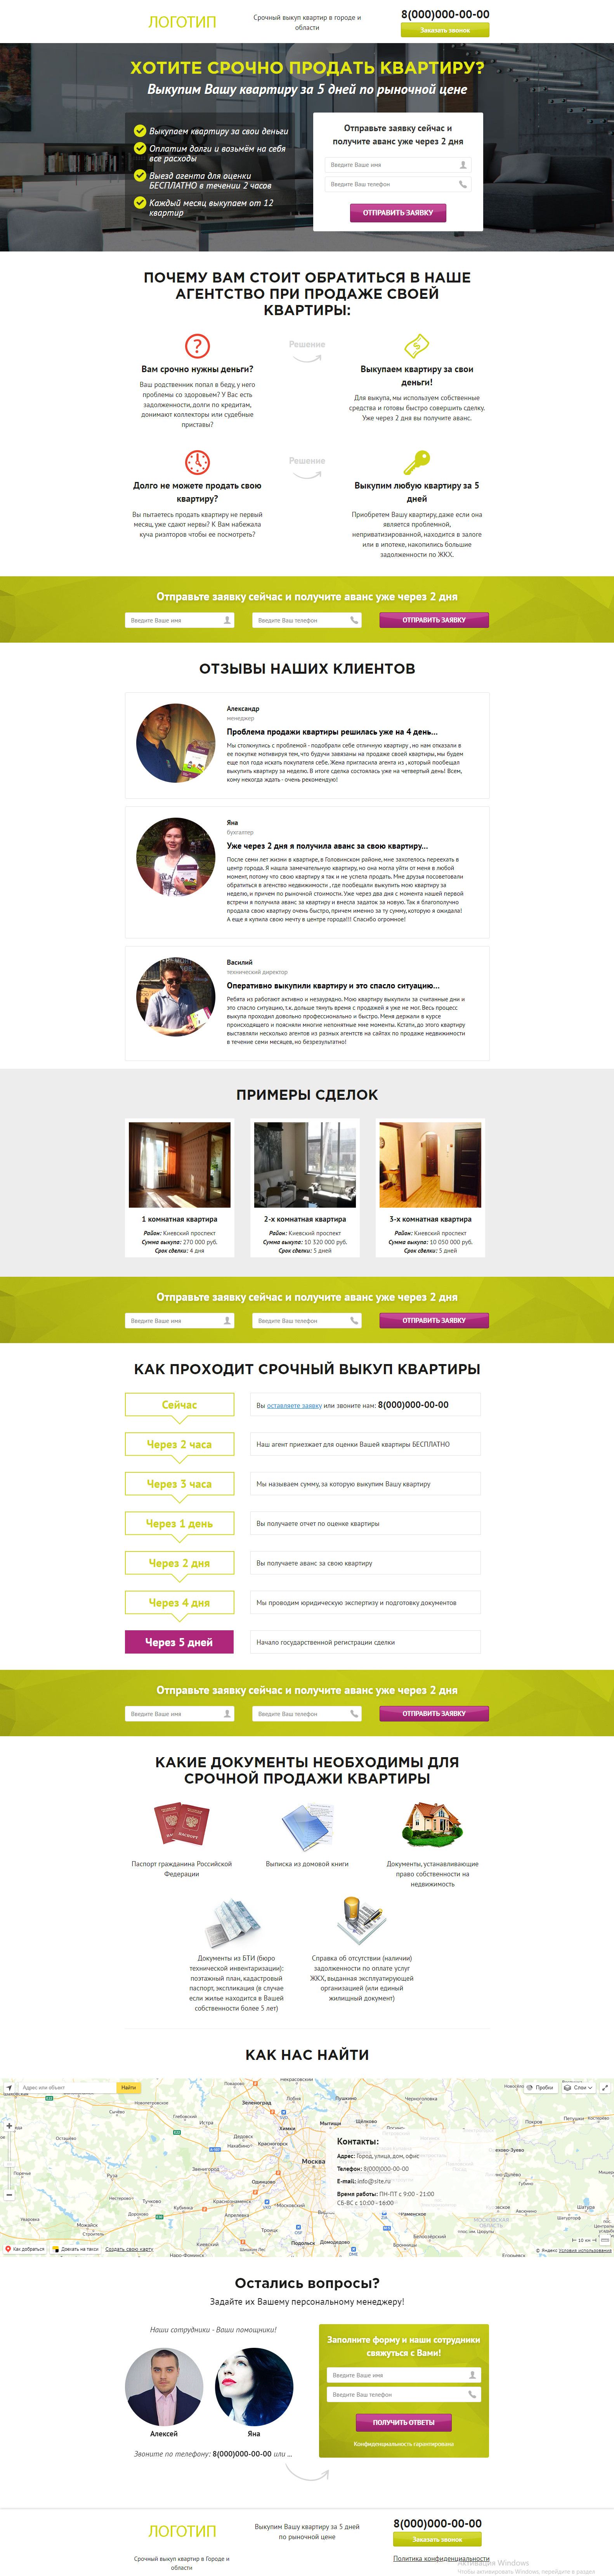 Landing page - Выкуп квартир